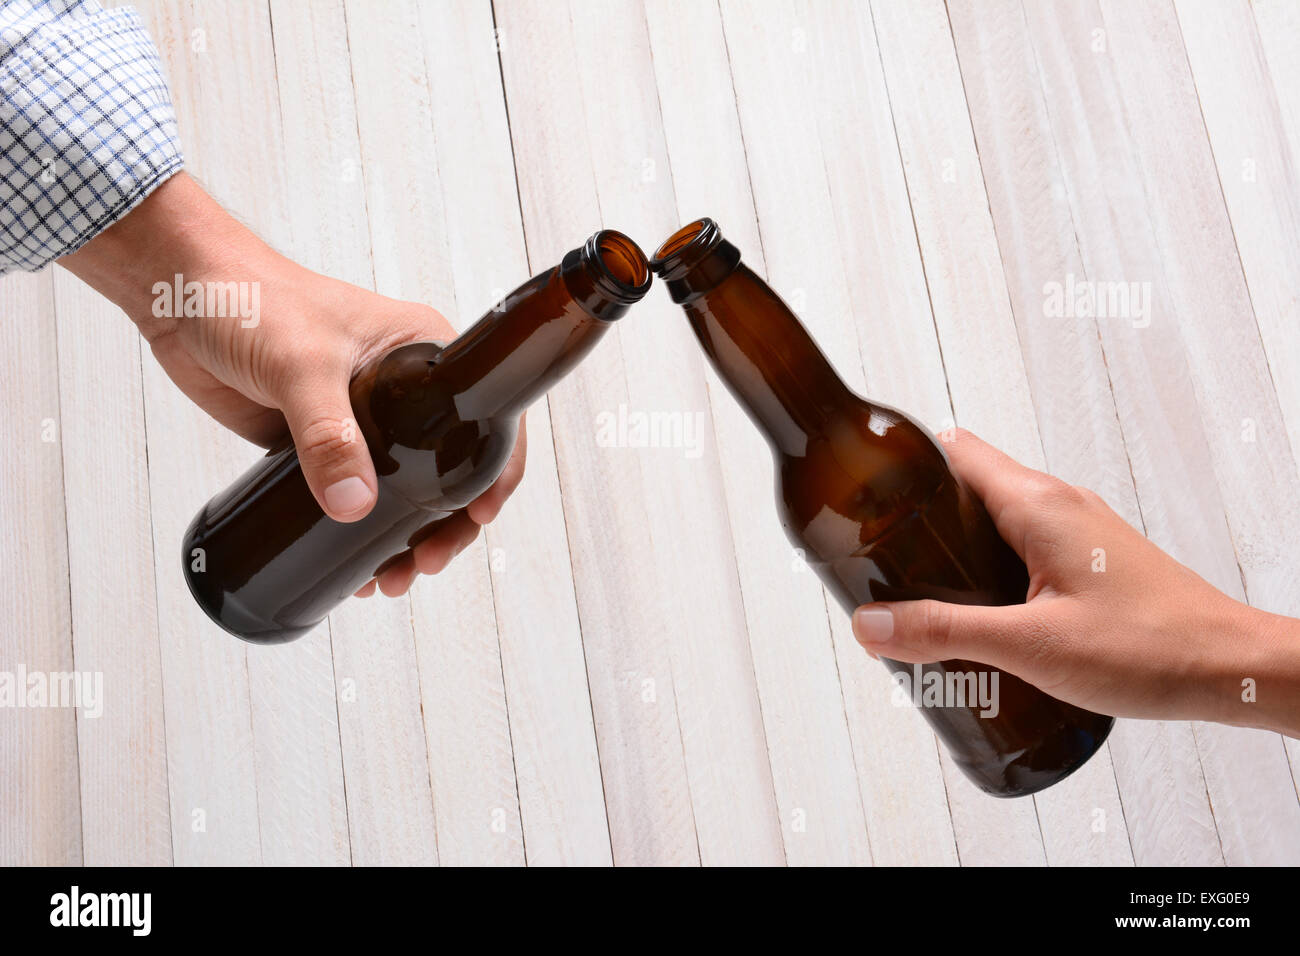 Un homme et une femme le grillage avec les bouteilles de bière. Ils sont le tintement des bouteilles sur un fond de bois rustique. Banque D'Images